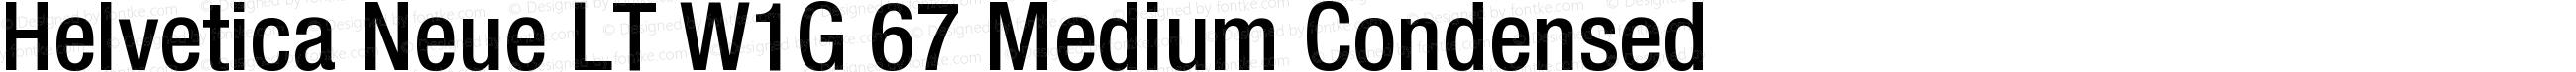 Helvetica Neue LT W1G 67 Medium Condensed